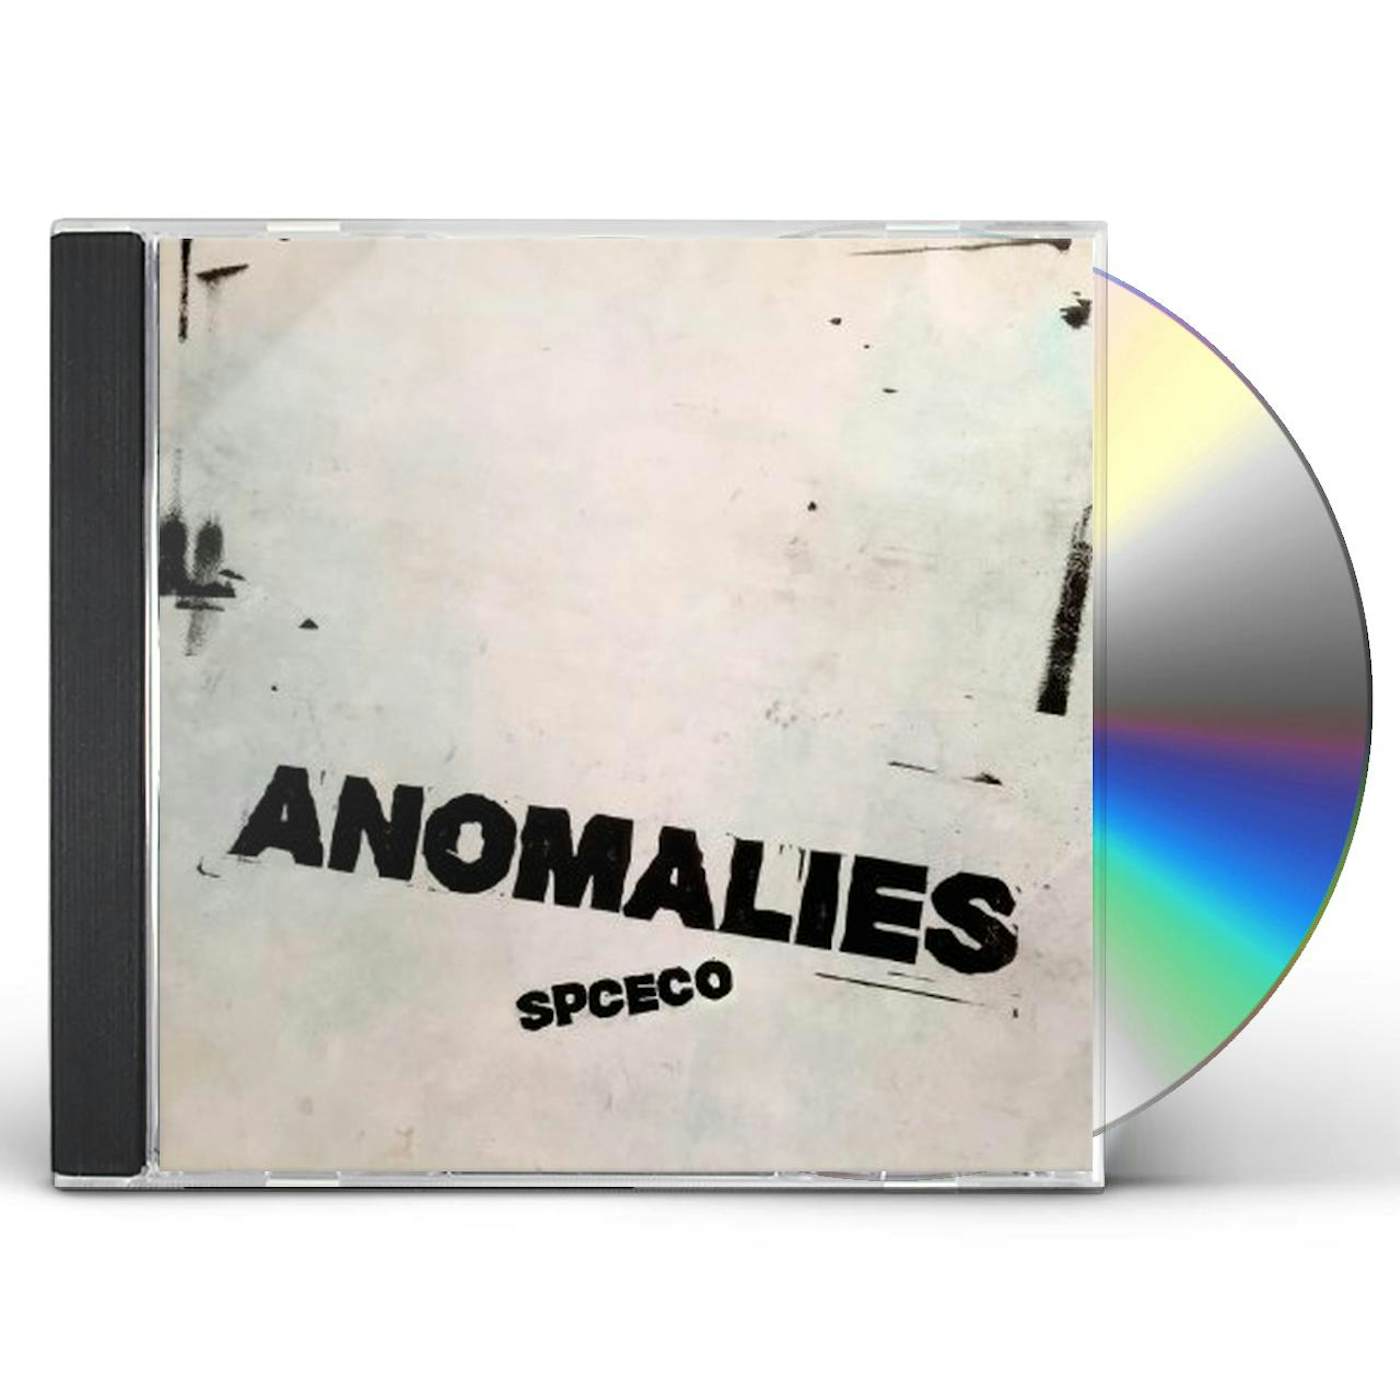 SPC ECO ANOMALIES CD